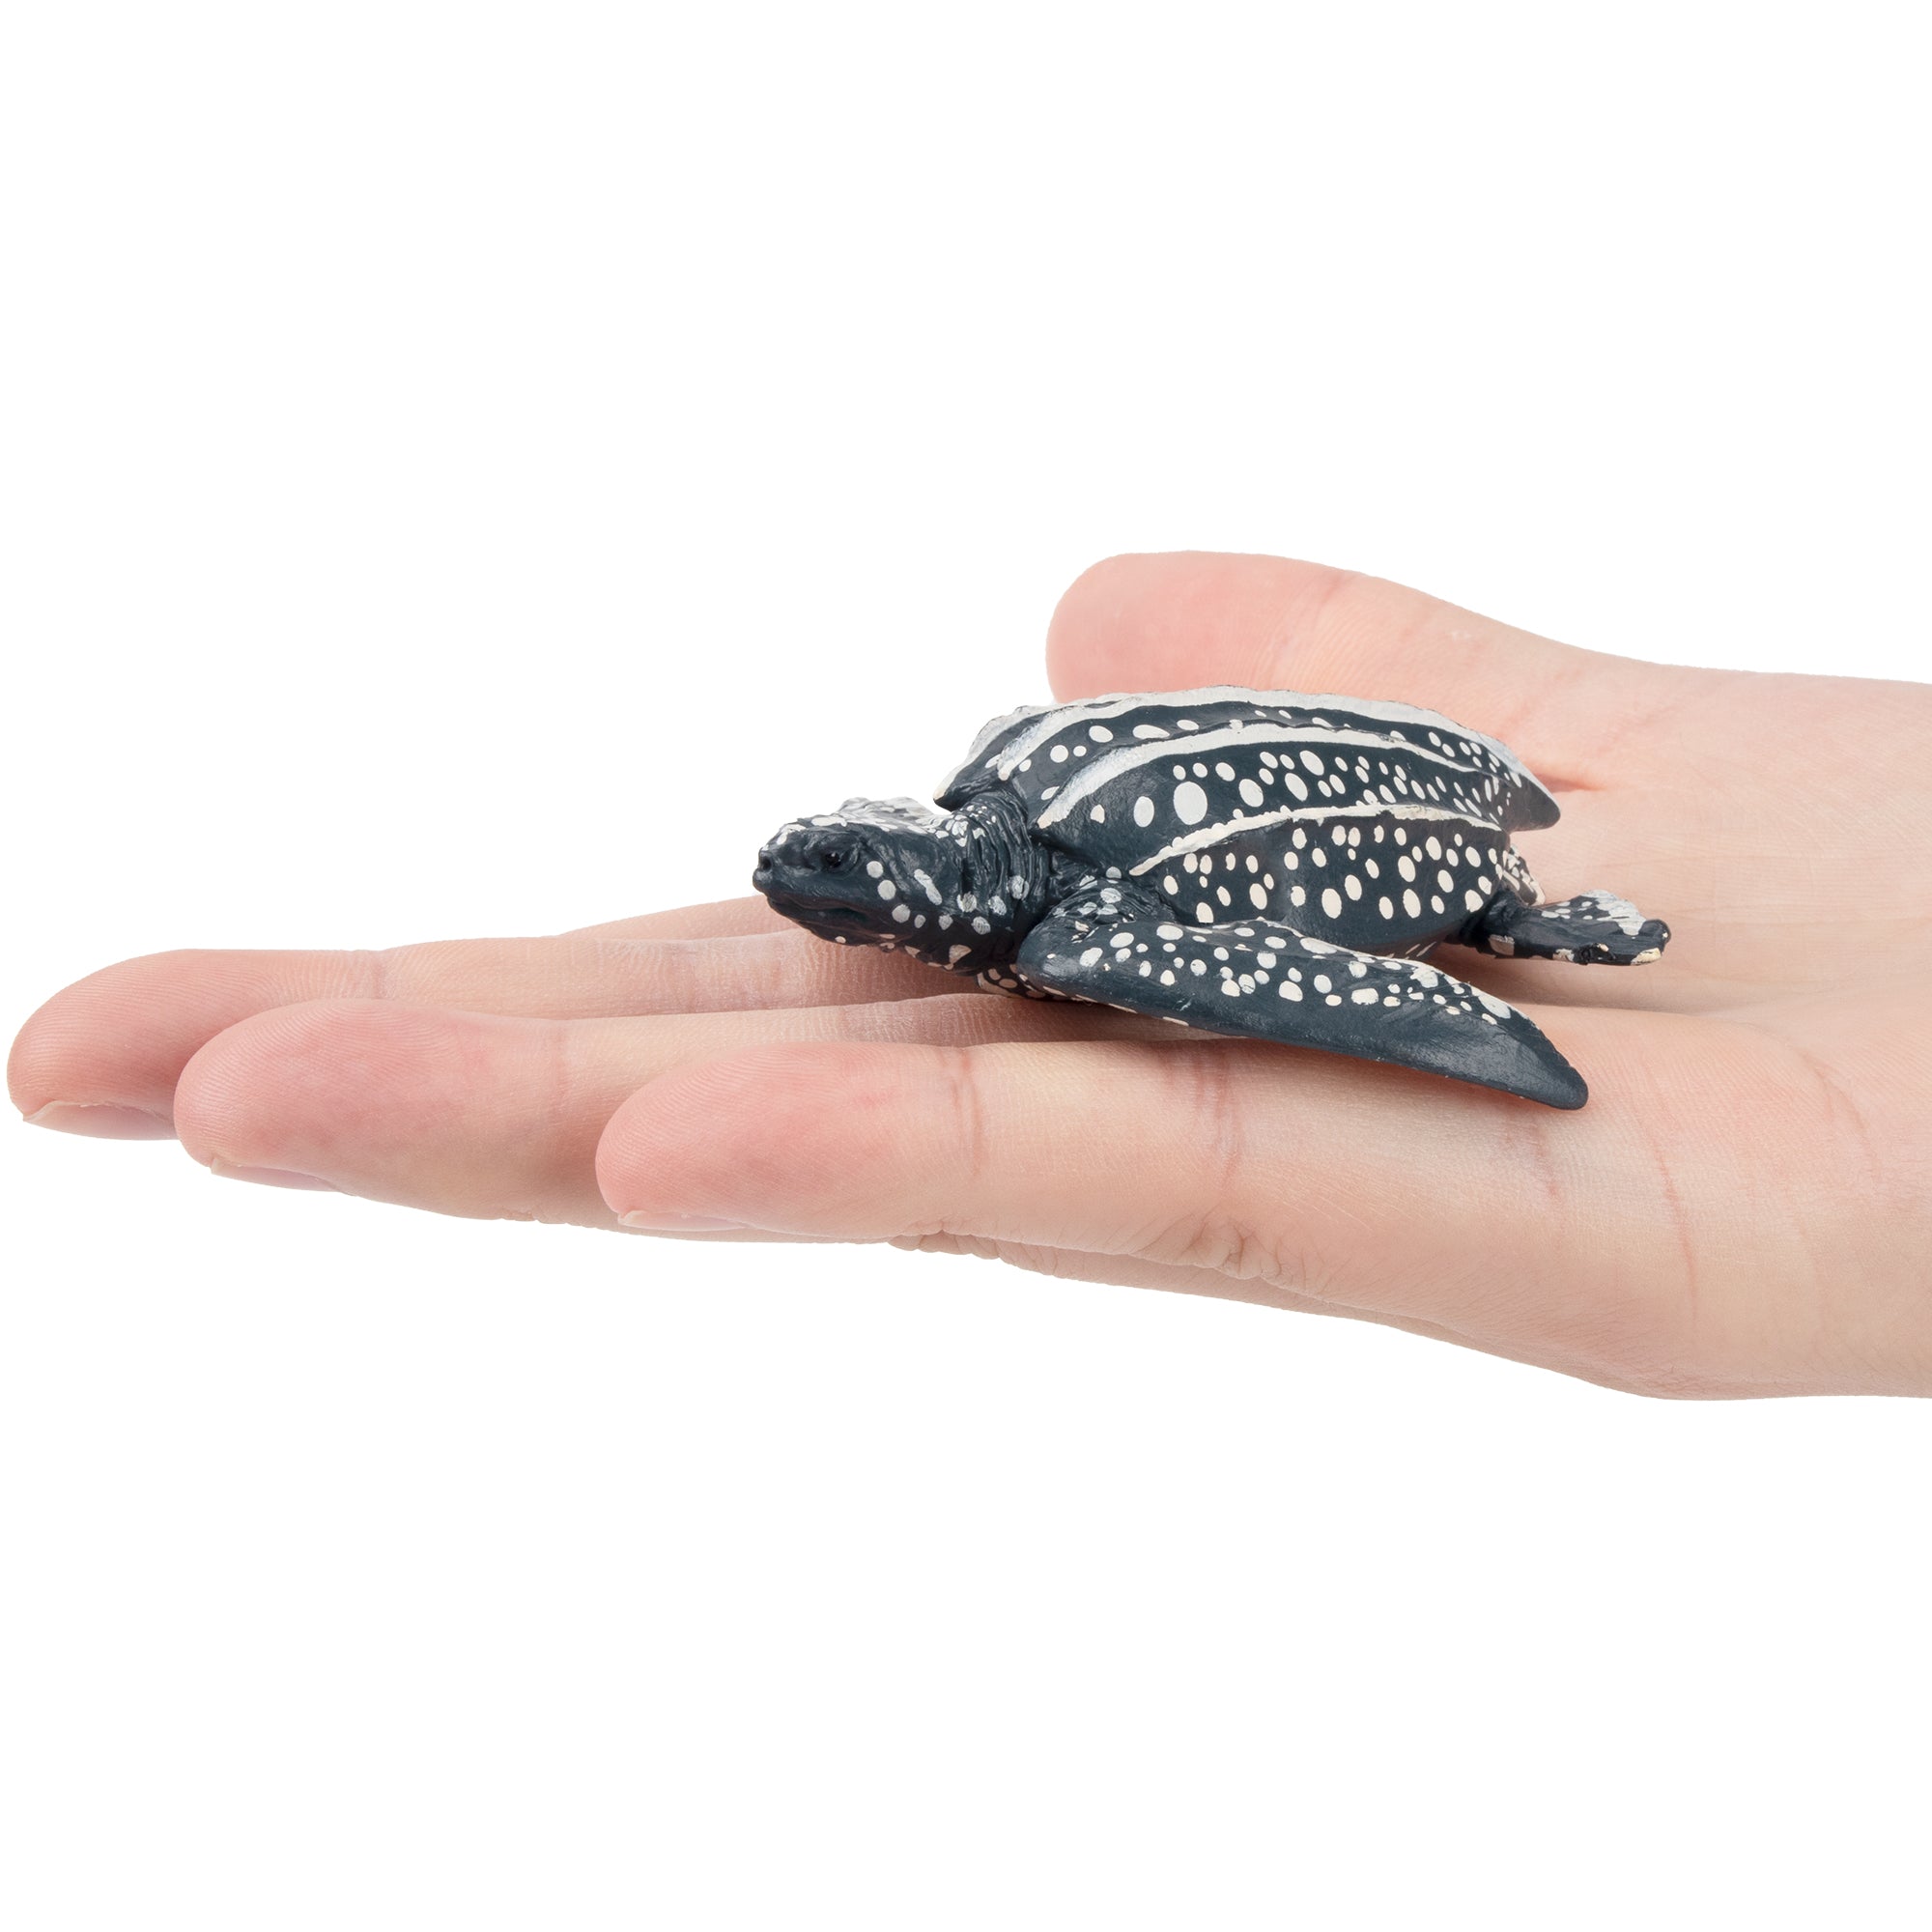 Toymany Leatherback Sea Turtle Figurine Toy-on hand